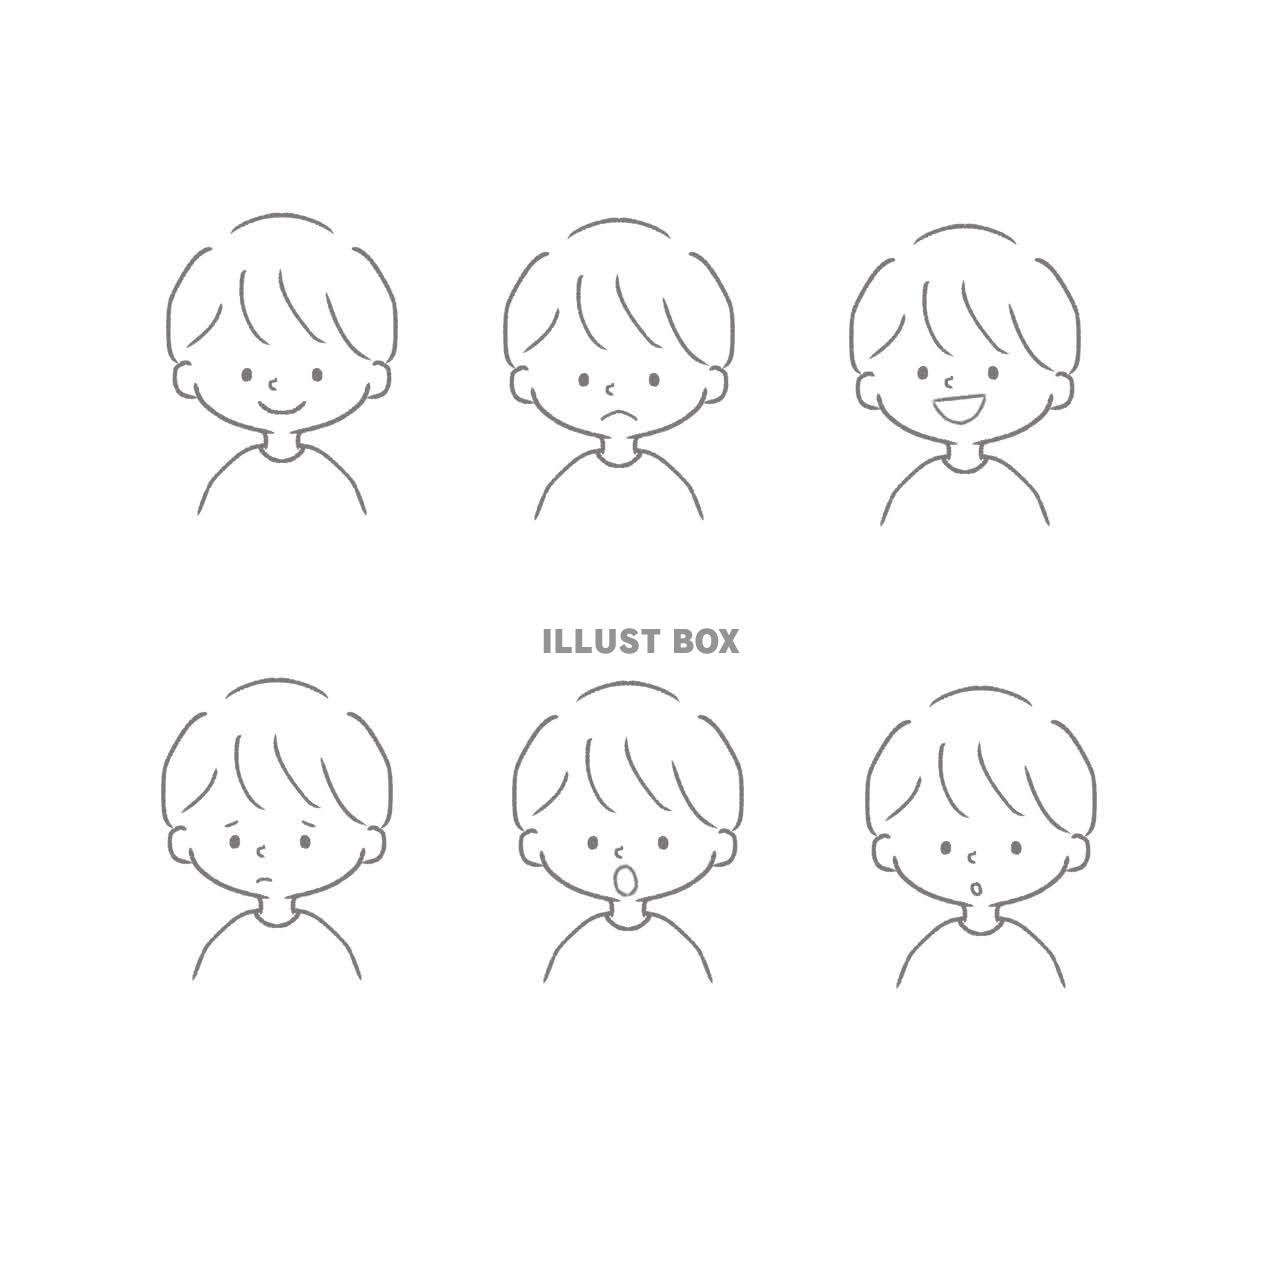 無料イラスト 手書き風のシンプルで可愛い男の子の6種類の表情セット